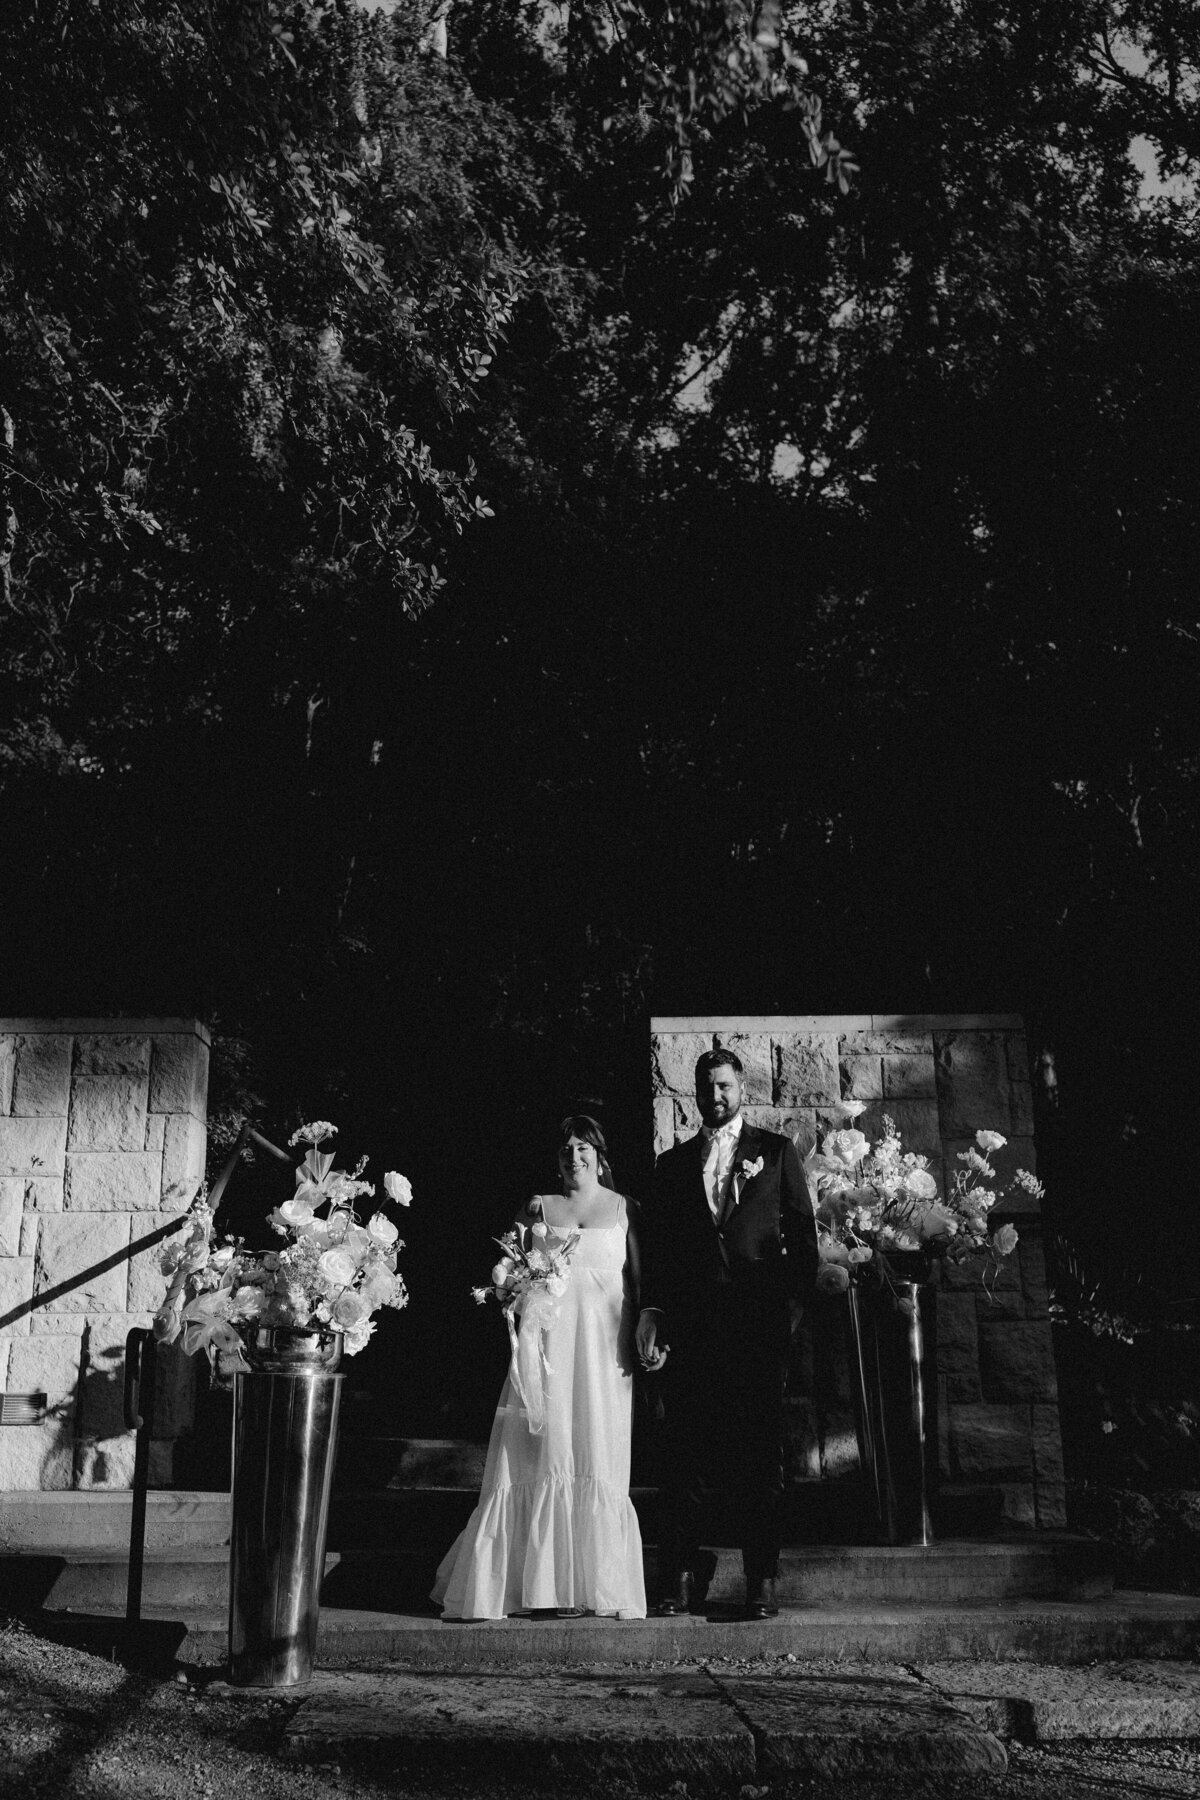 Bride and groom standing on ceremony site at Umlauf Sculpture Garden, Austin